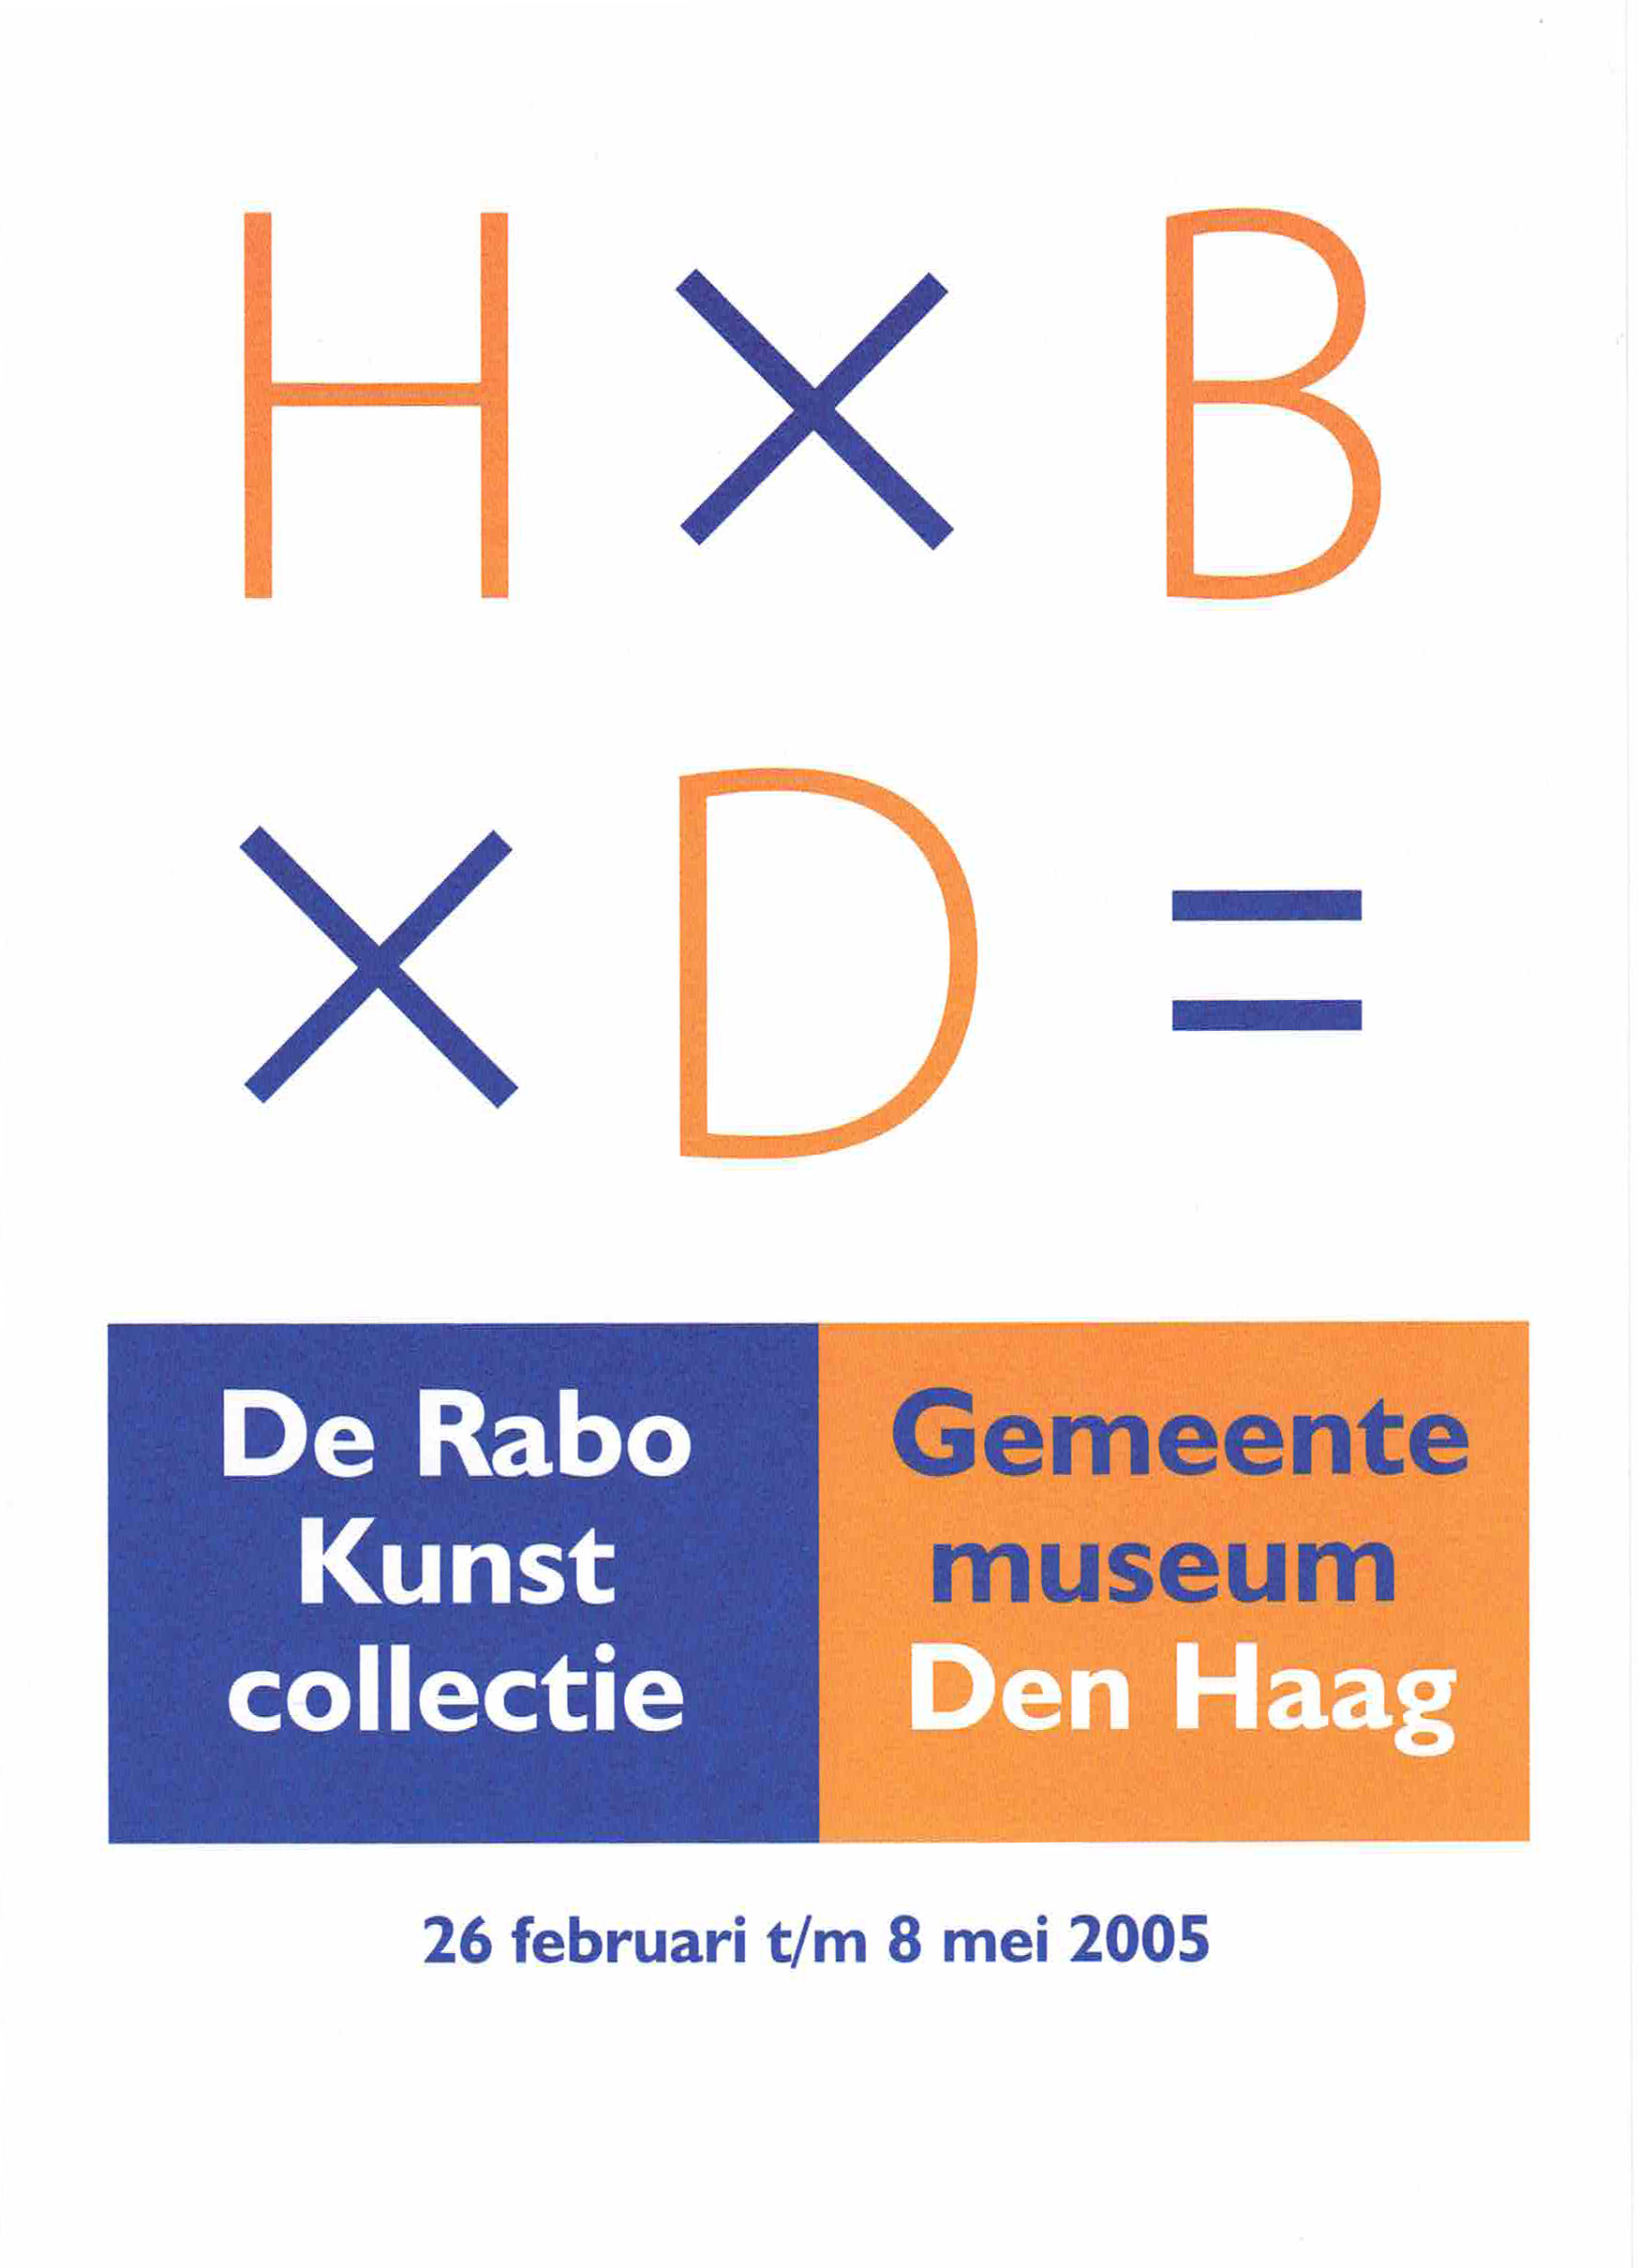 Rabo Kunstcollectie Gemeentemuseum Den Haag